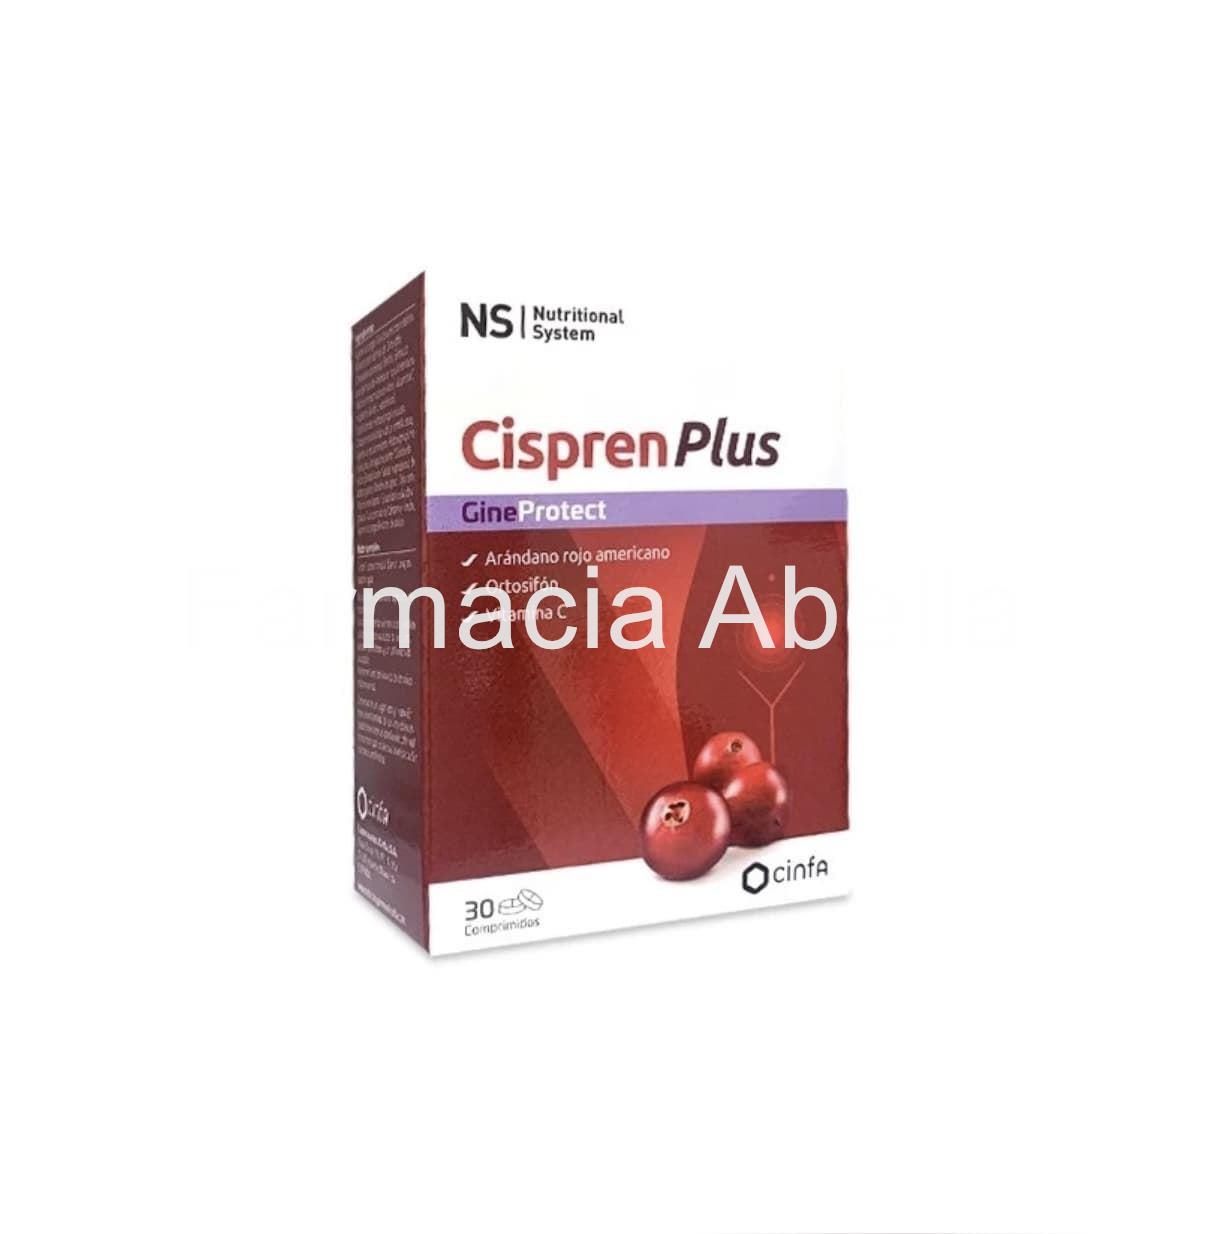 Ns Cispren 30 comprimidos extracto de arándano rojo - Imagen 1